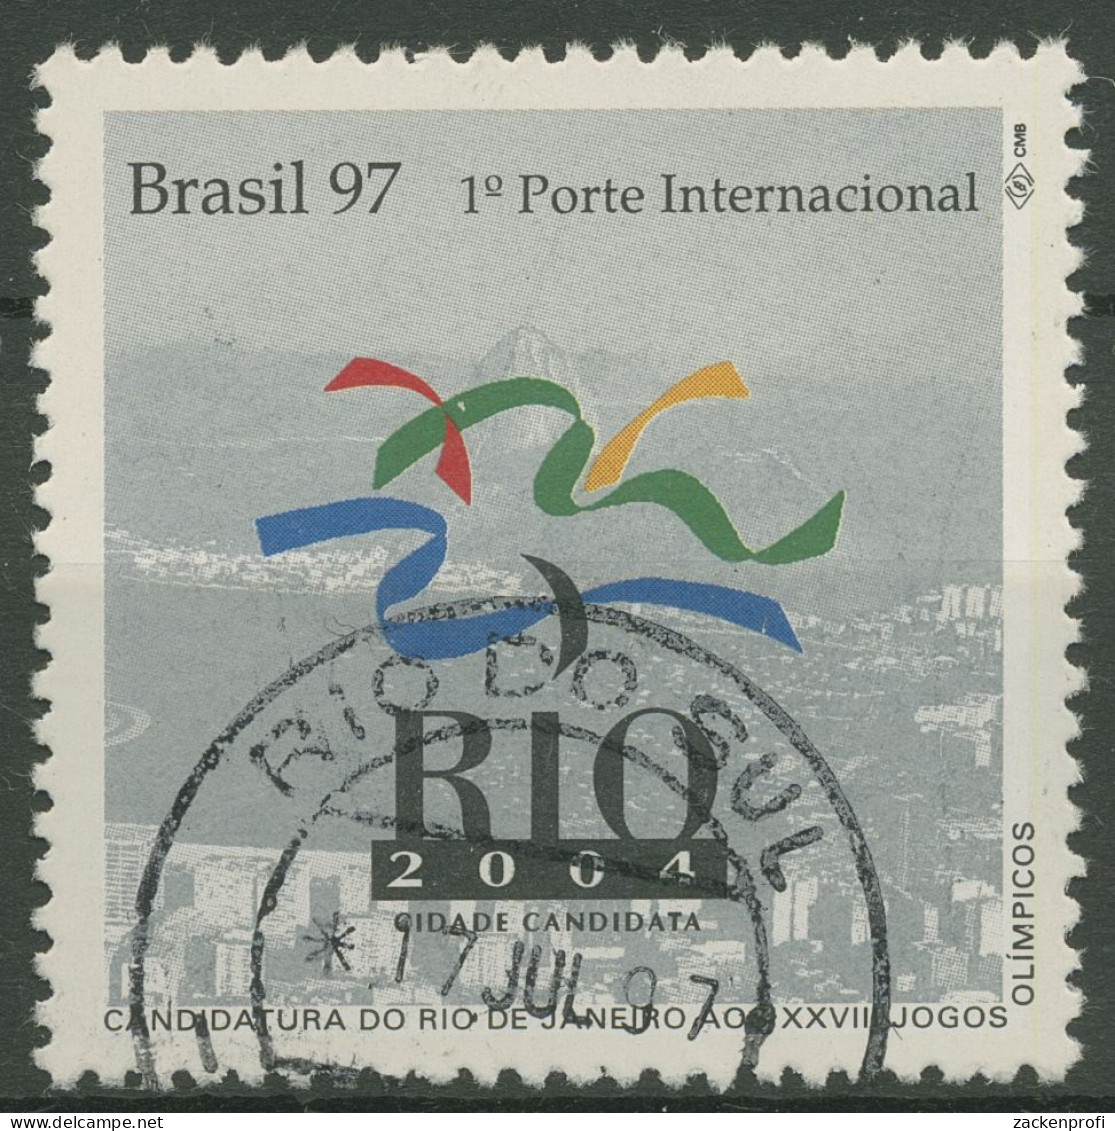 Brasilien 1997 Bewerbung Für 2004 Olympische Sommerspiele 2734 Gestempelt - Oblitérés